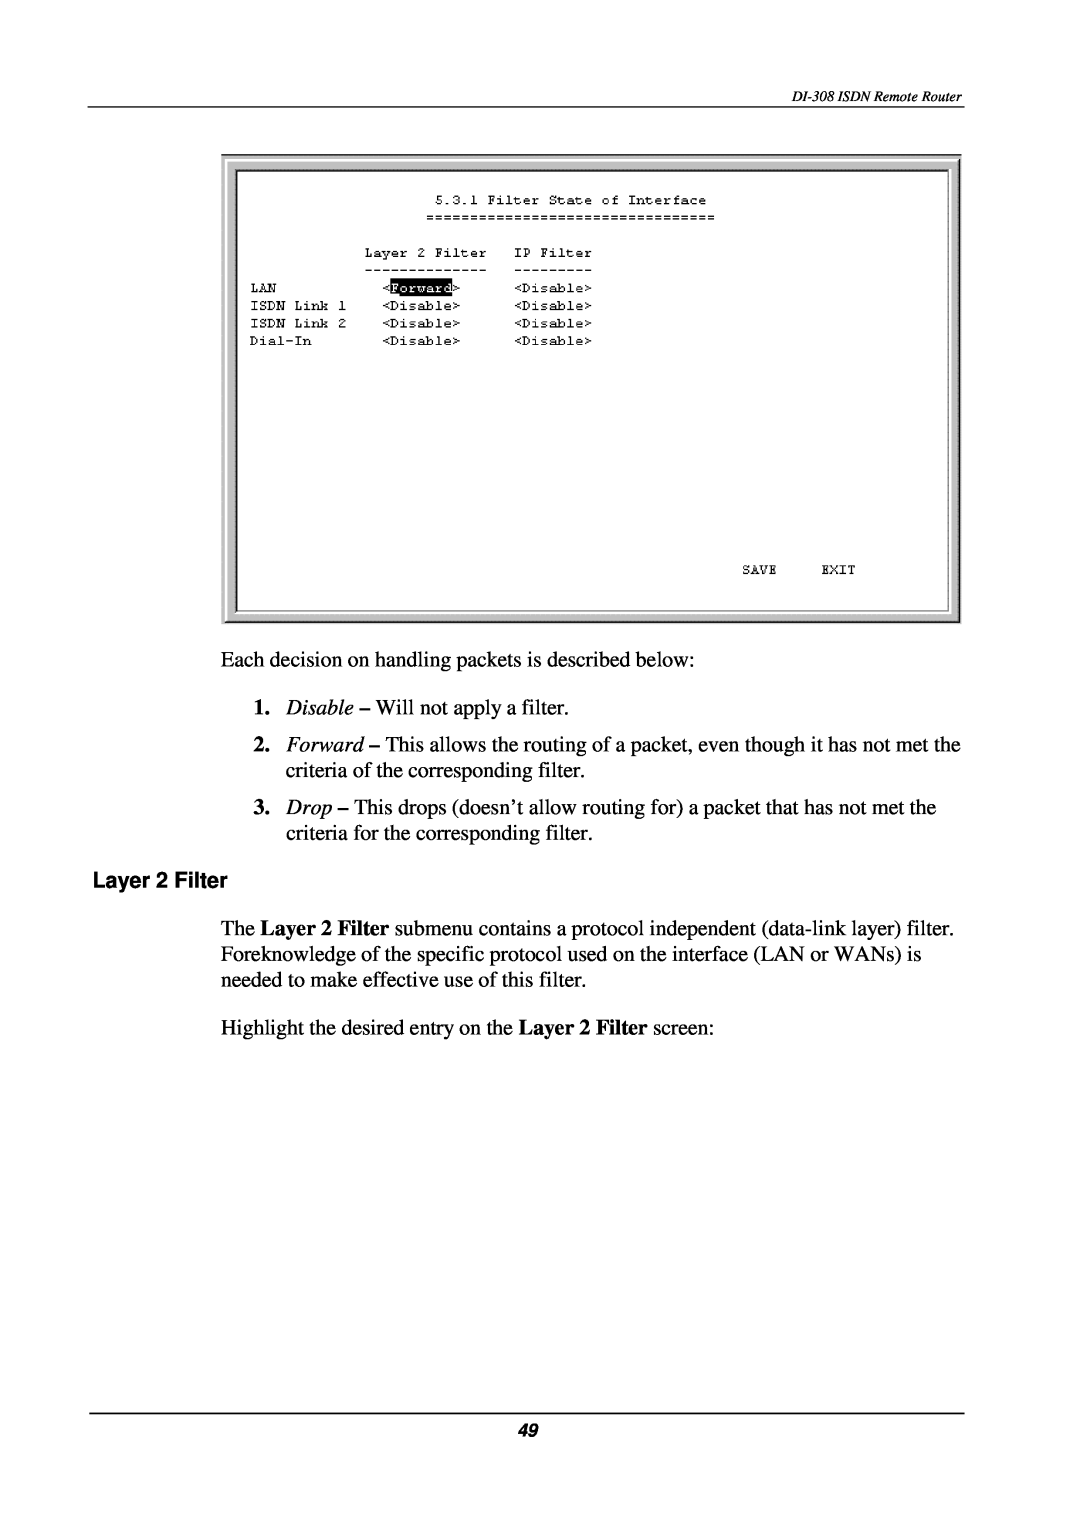 D-Link DI-308 manual Layer 2 Filter 